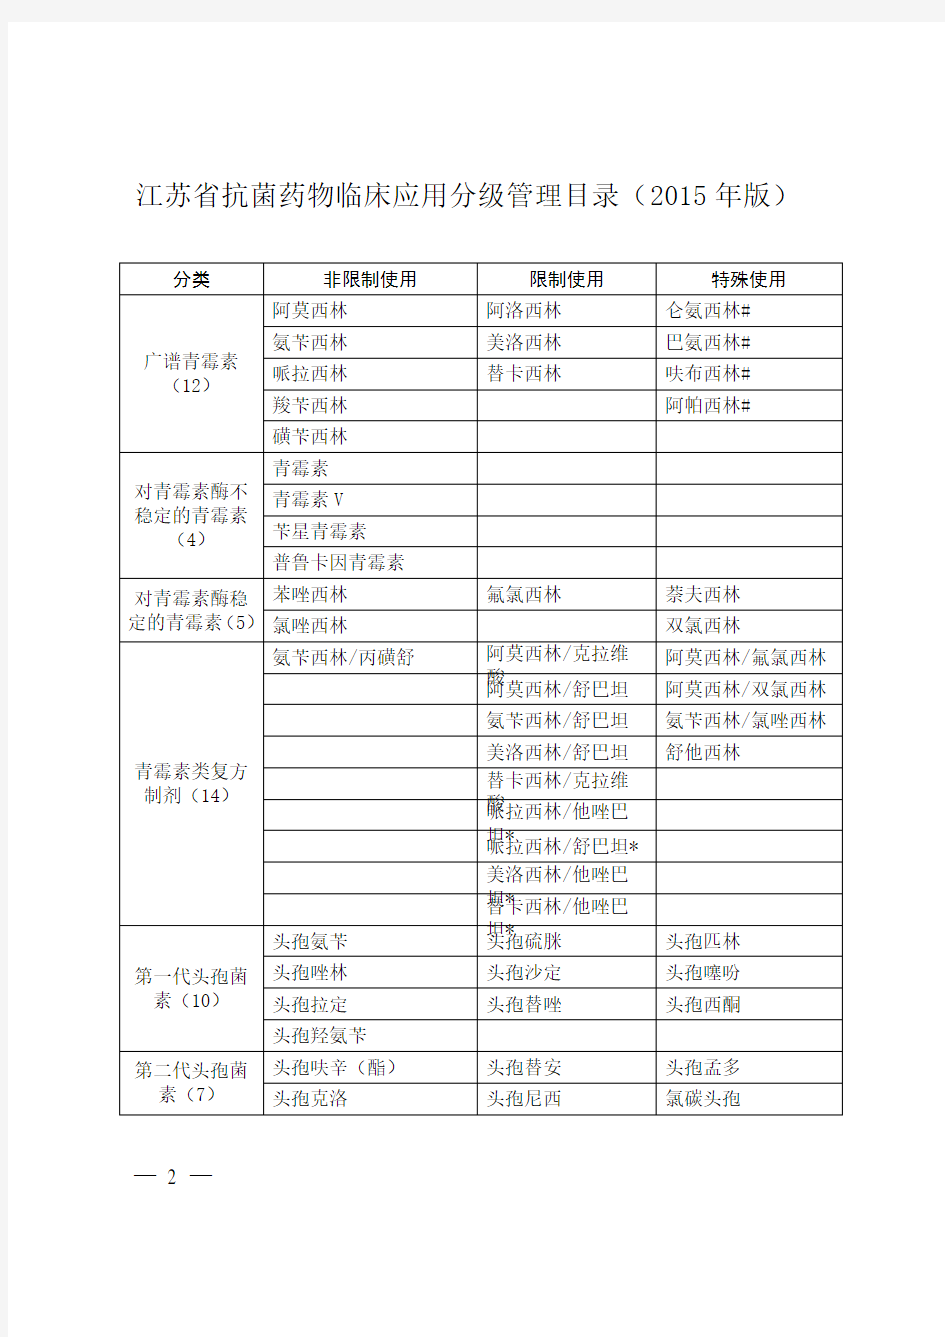 江苏省抗菌药物临床应用分级管理目录(2015年版